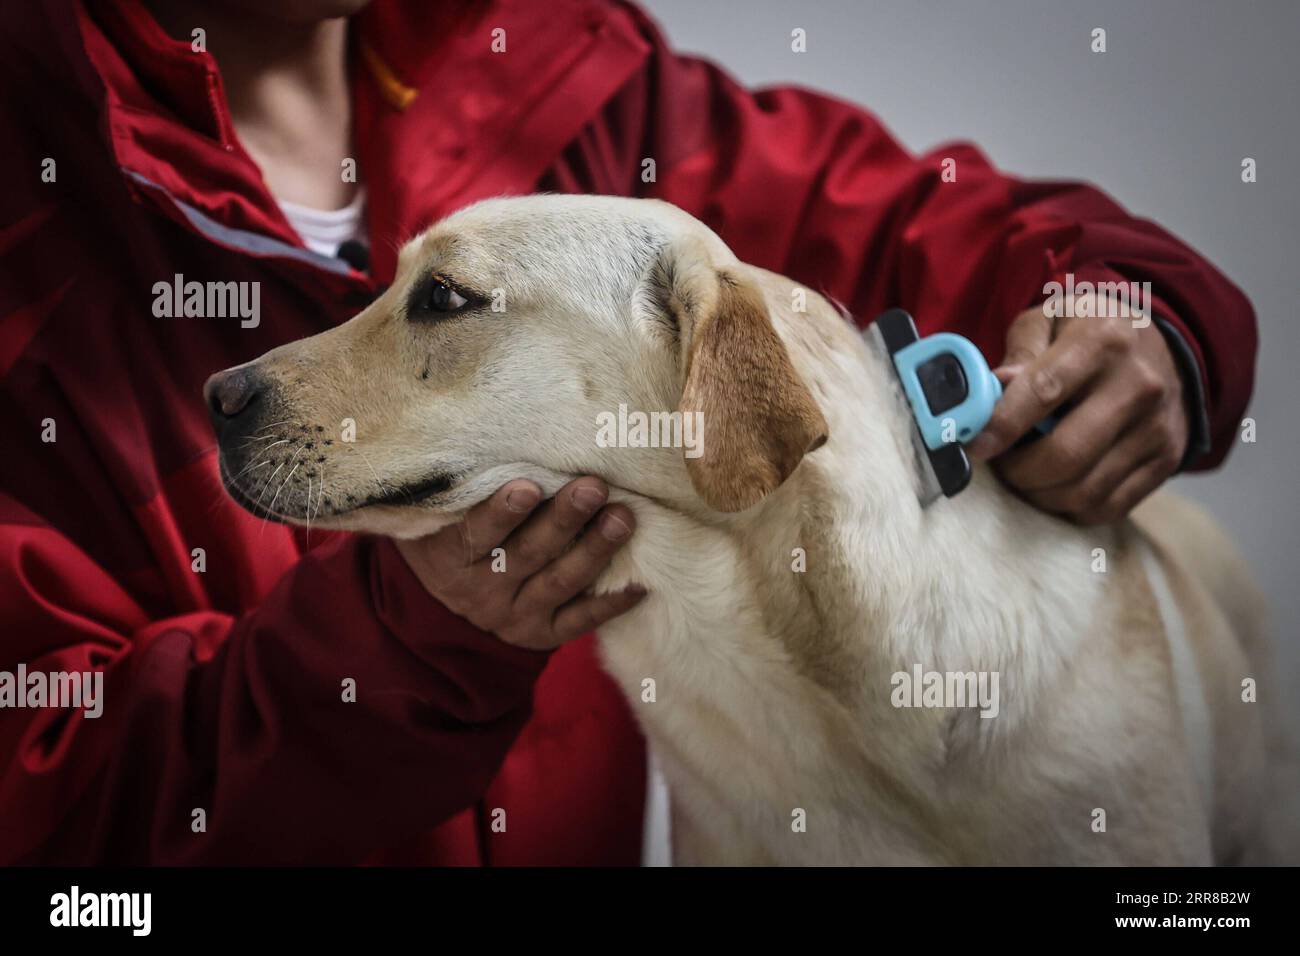 210428 -- DALIAN, 28. April 2021 -- Trainer Fu Mingyan kämmt einen Blindenhund in Dalian, Provinz Liaoning im Nordosten Chinas, 22. April 2021. Die Dalian-Niederlassung des China Guide Dog Training Center, das im Mai 2006 gegründet wurde, ist eine gemeinnützige Ausbildungseinrichtung für Blindenhunde in China. Es hat 239 kostenlose Blindenhunde für sehbehinderte Menschen im ganzen Land zur Verfügung gestellt. Blindenhunde in der Mitte werden streng aus Labrador und Golden Retrievers ausgewählt. Normalerweise 45 Tage nach der Geburt werden diese Welpen zu freiwilligen Familien geschickt, um sich mit dem menschlichen Leben vertraut zu machen und einige einfache Befehle zu lernen. Stockfoto